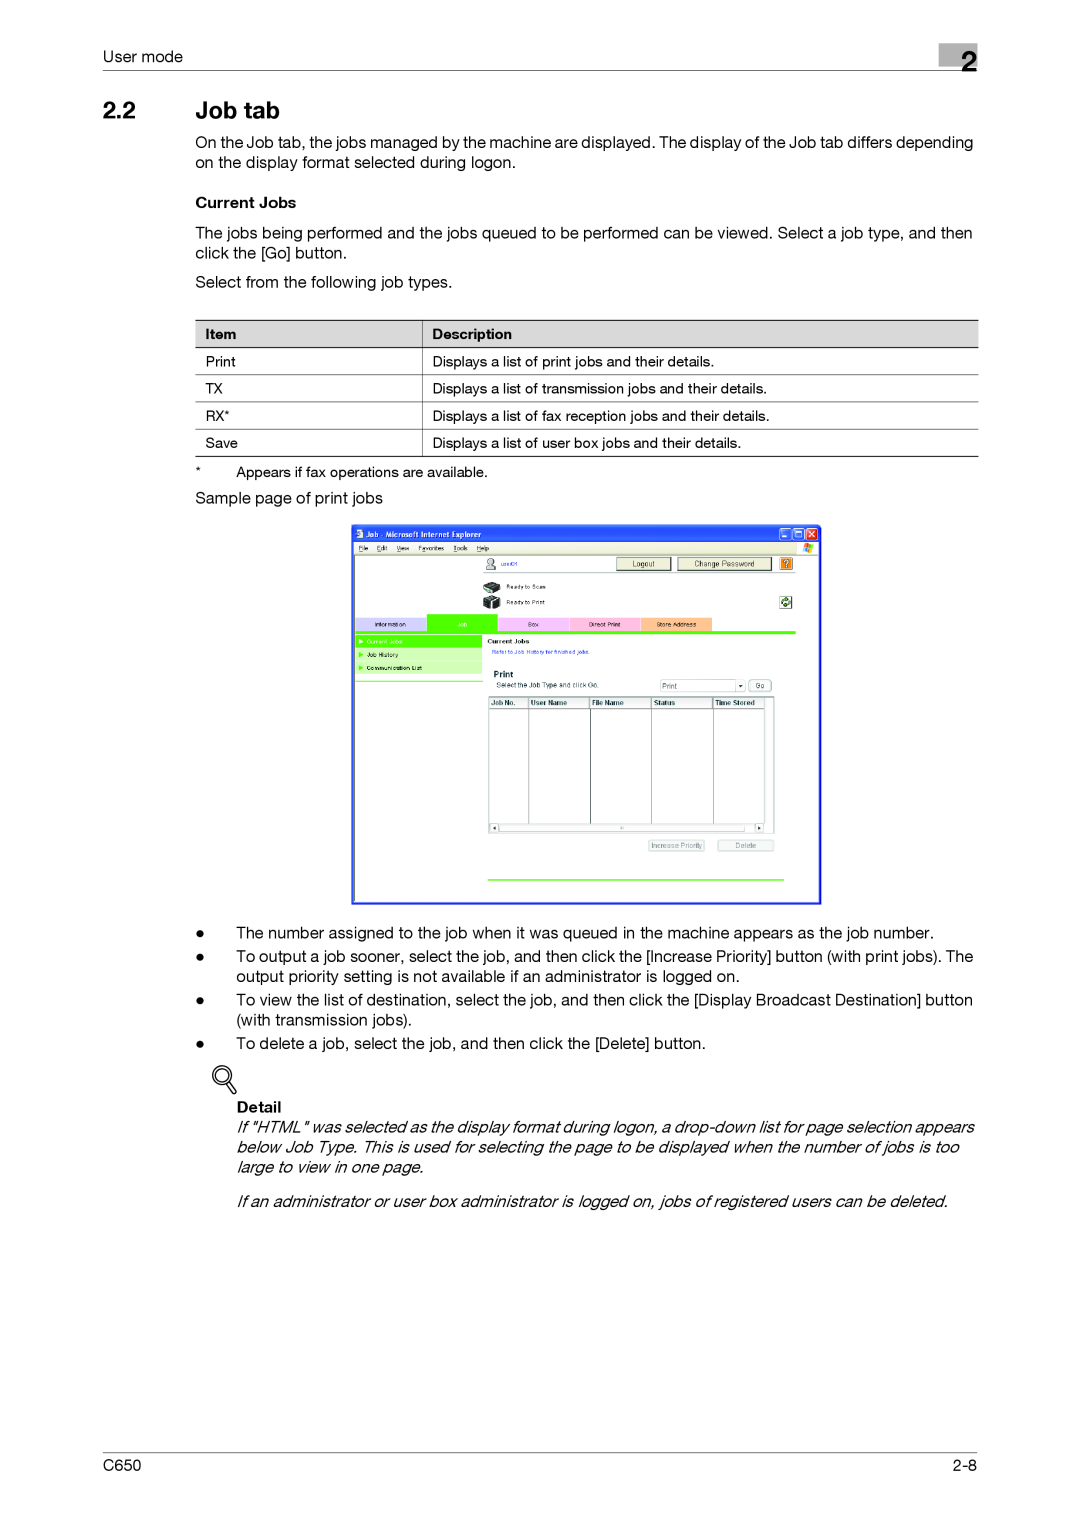 Konica Minolta C650 manual 2.2Job tab, Current Jobs, Detail 